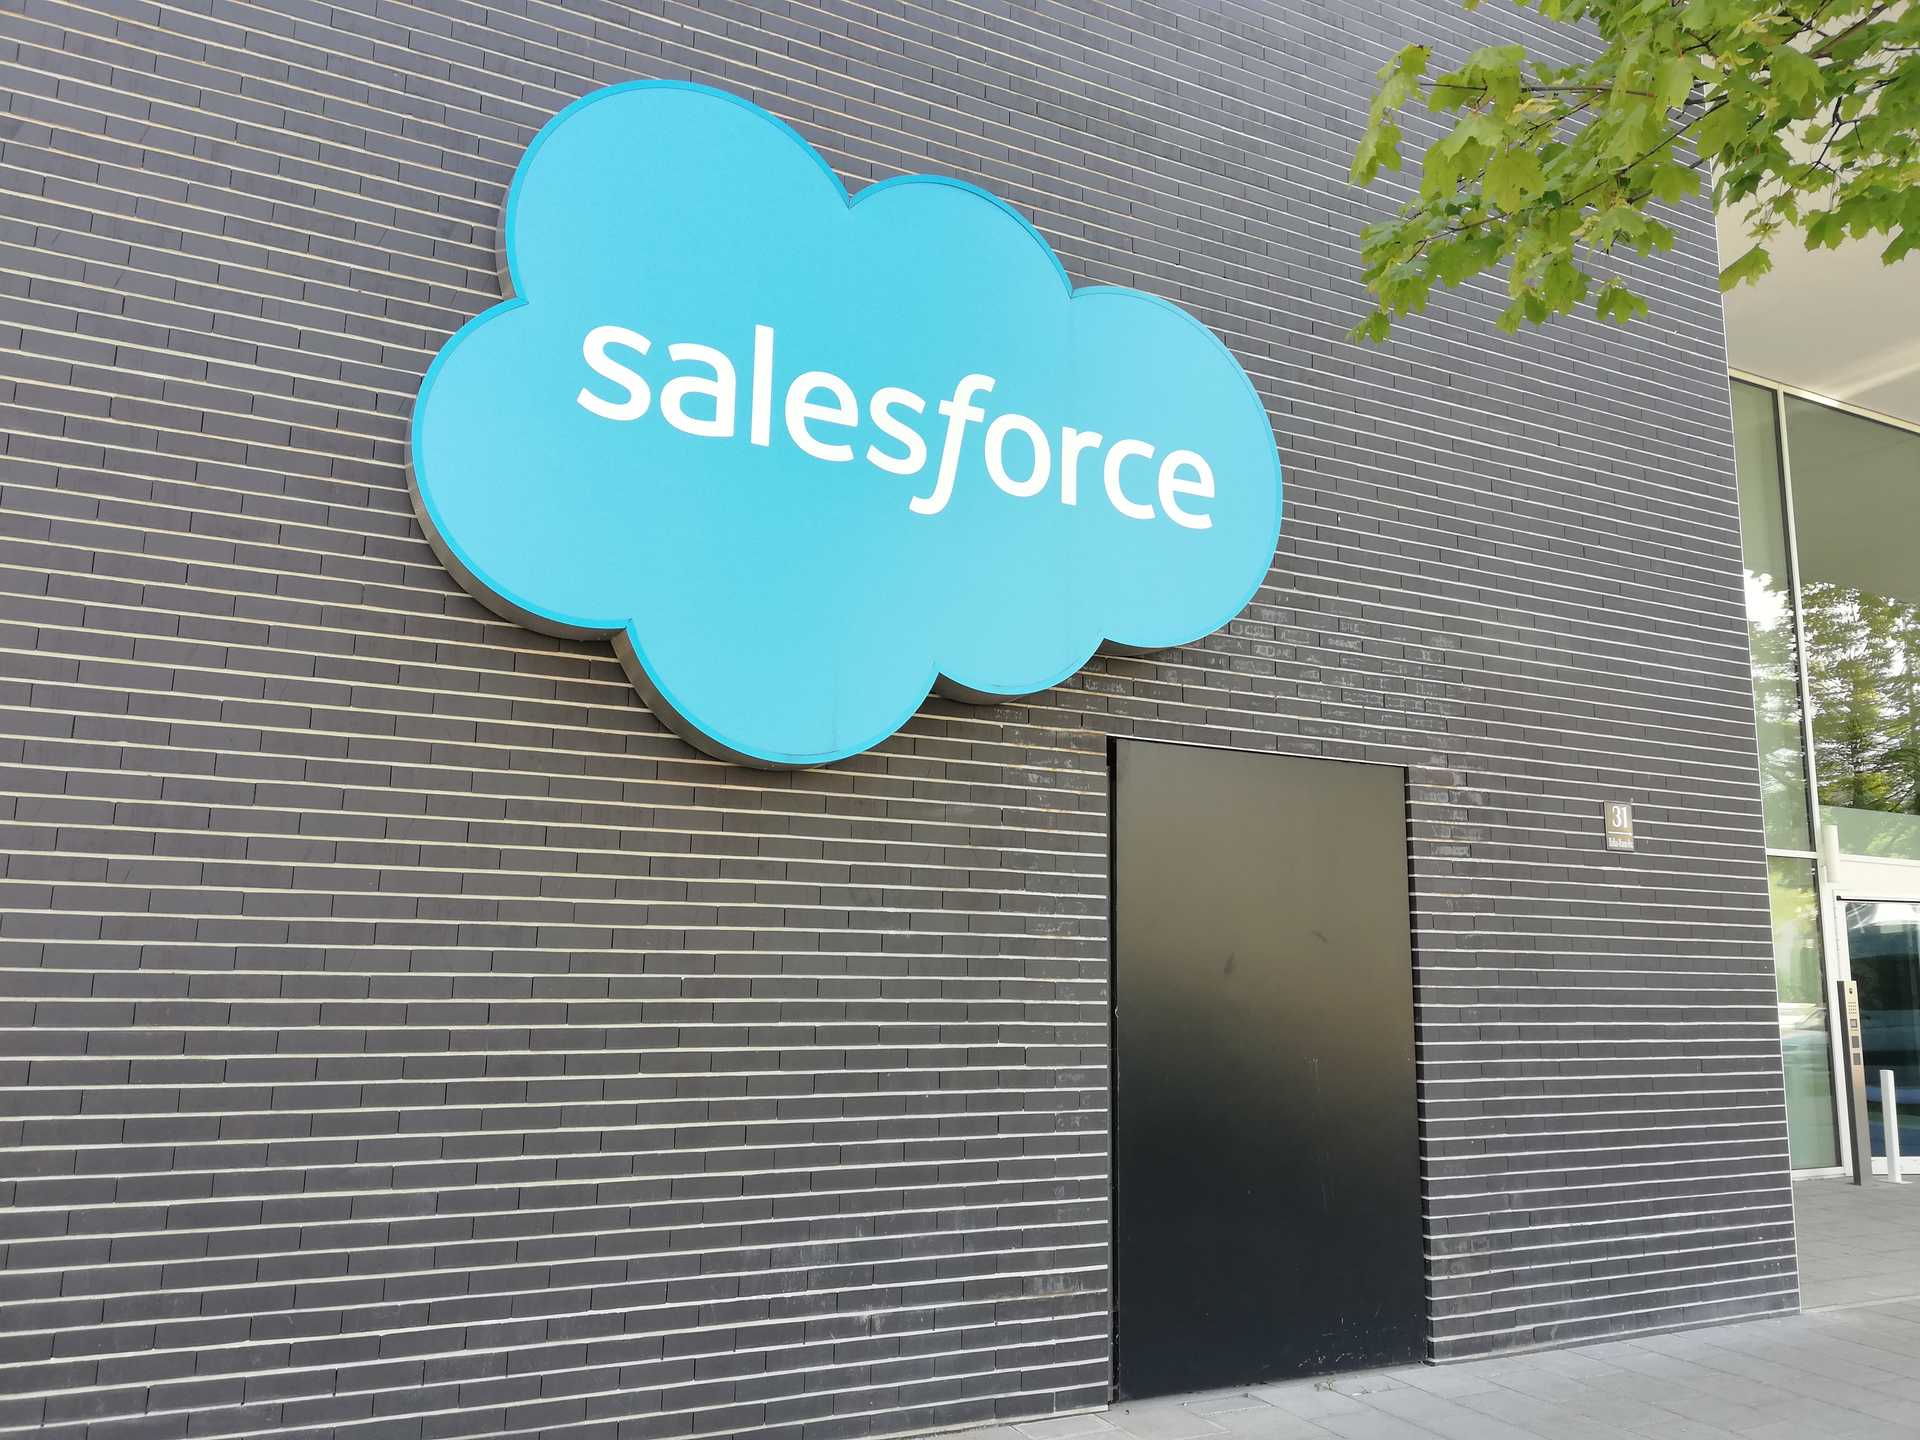 salesforce logo sign on building